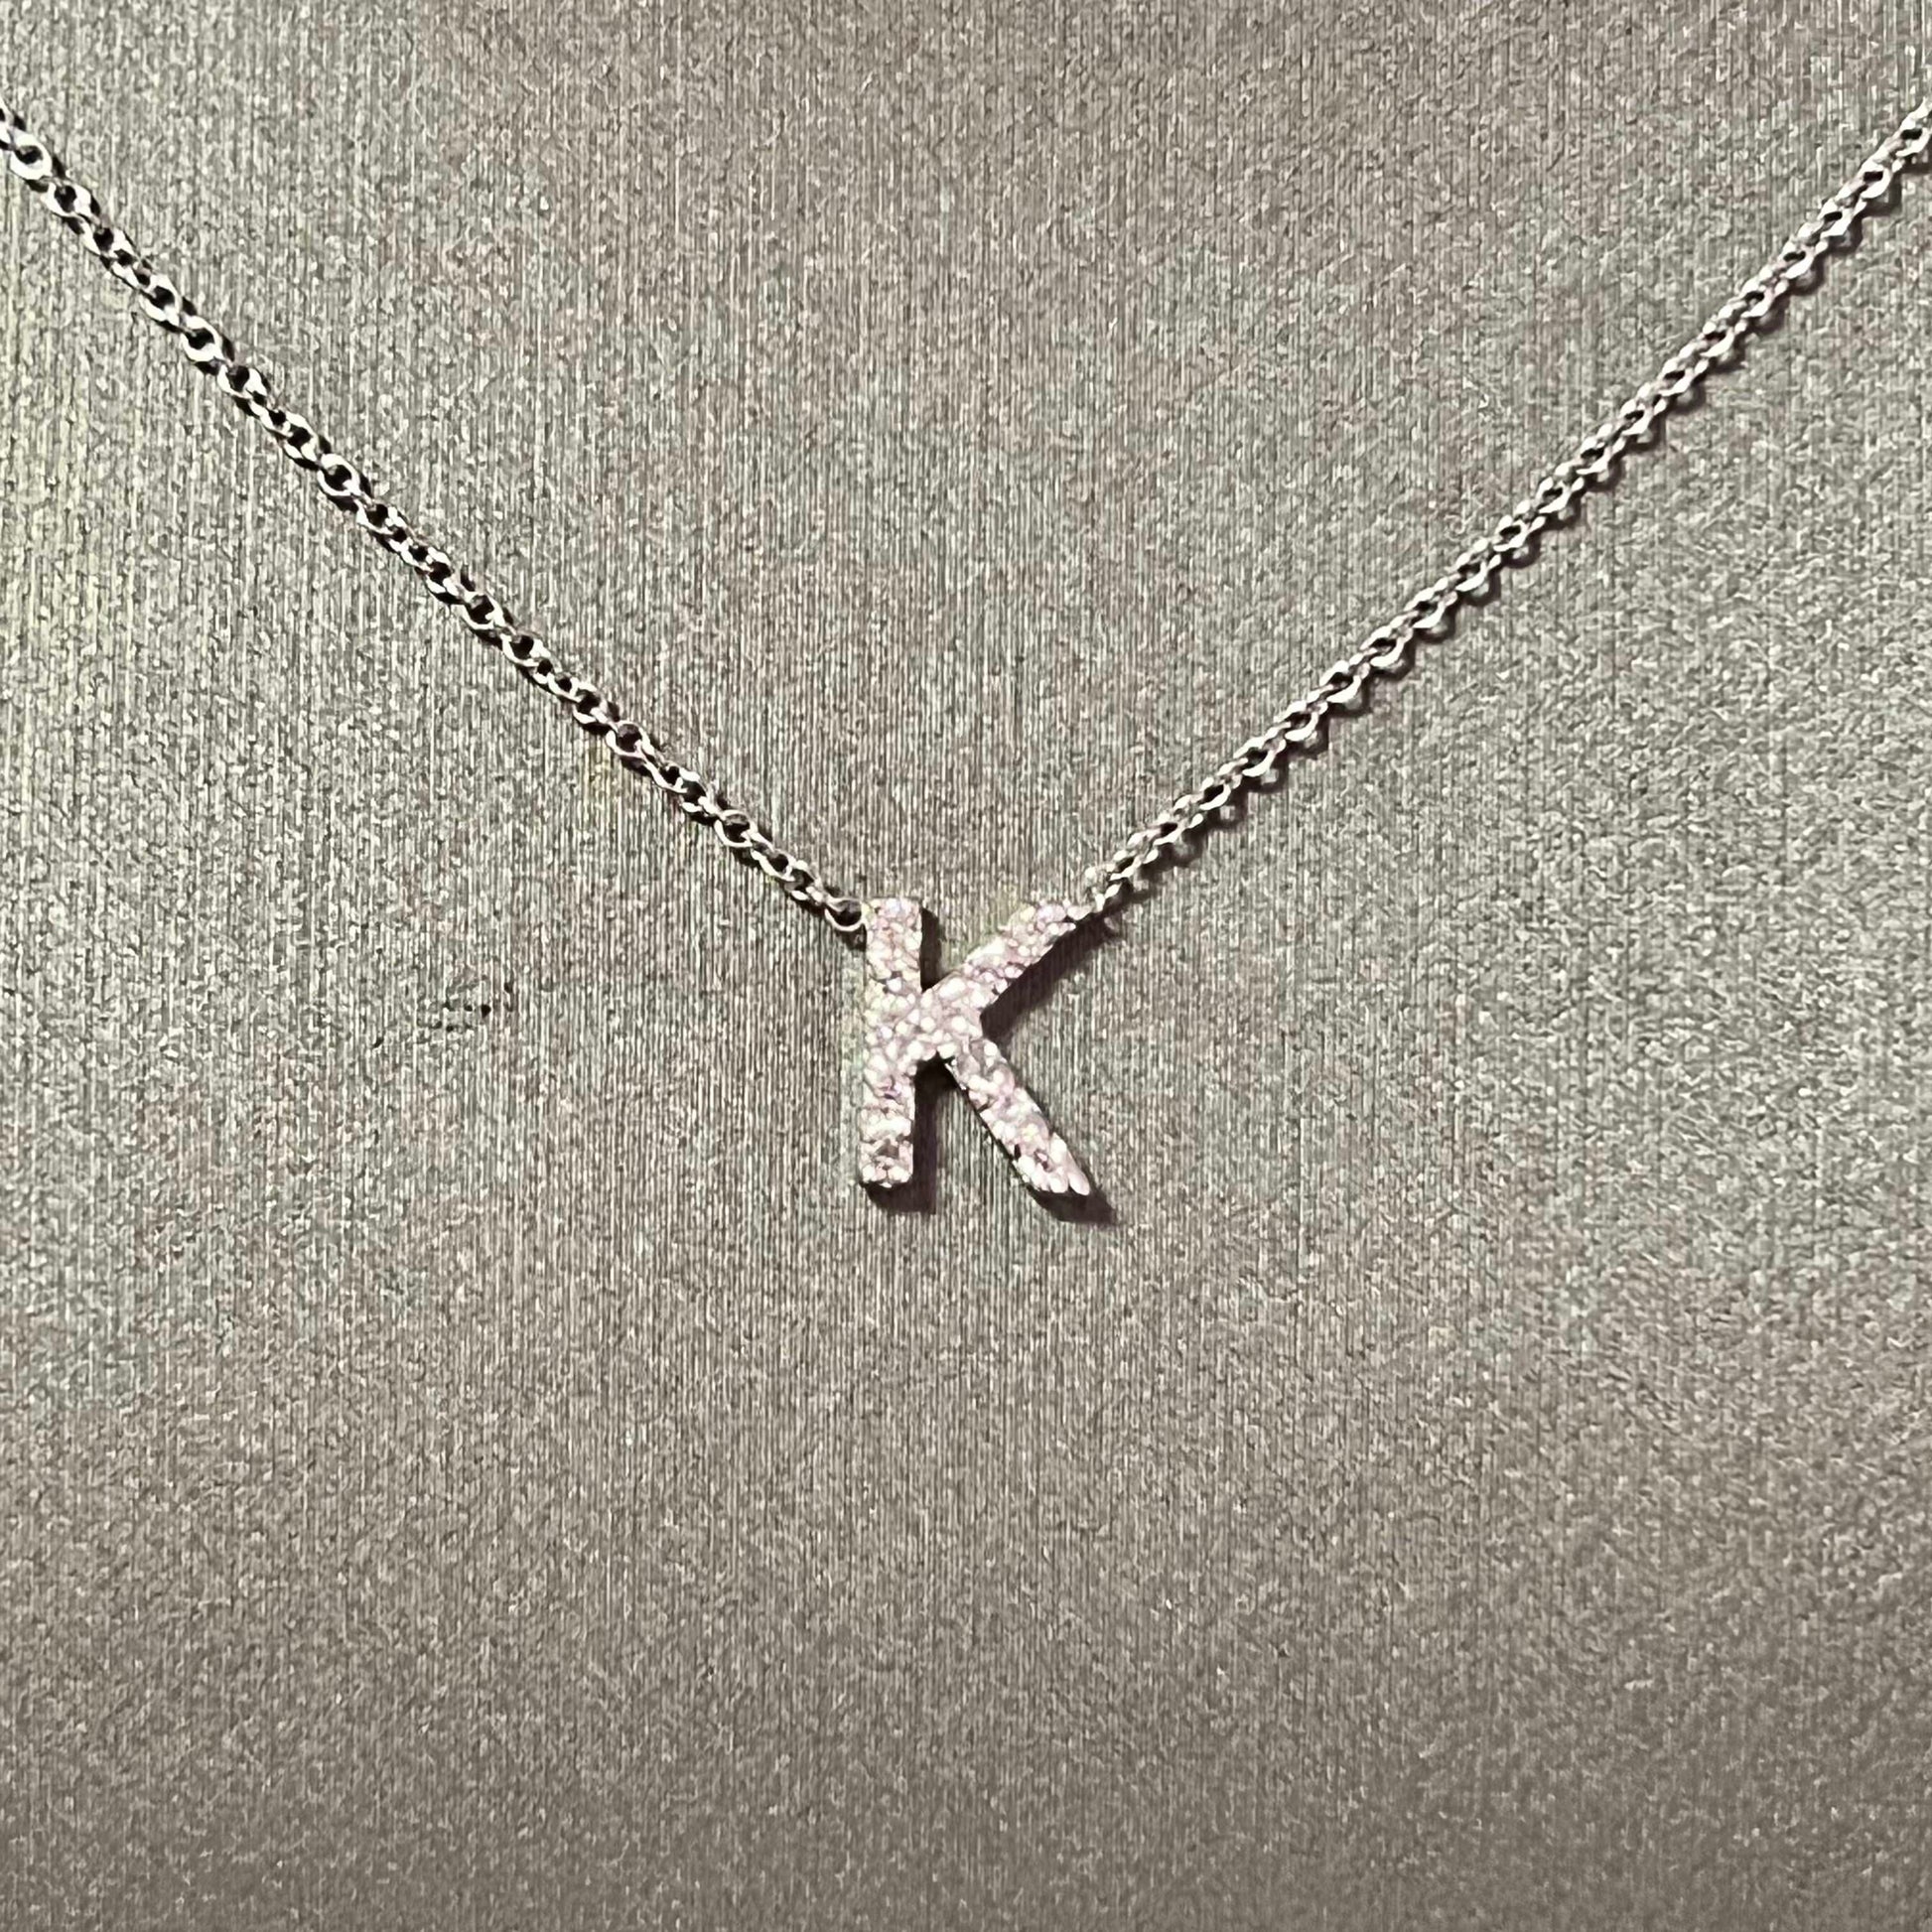 Diamond Letter "K" Pendant Necklace 18" 14k Gold 0.14 TCW Certified $1,950 121275 - Certified Fine Jewelry